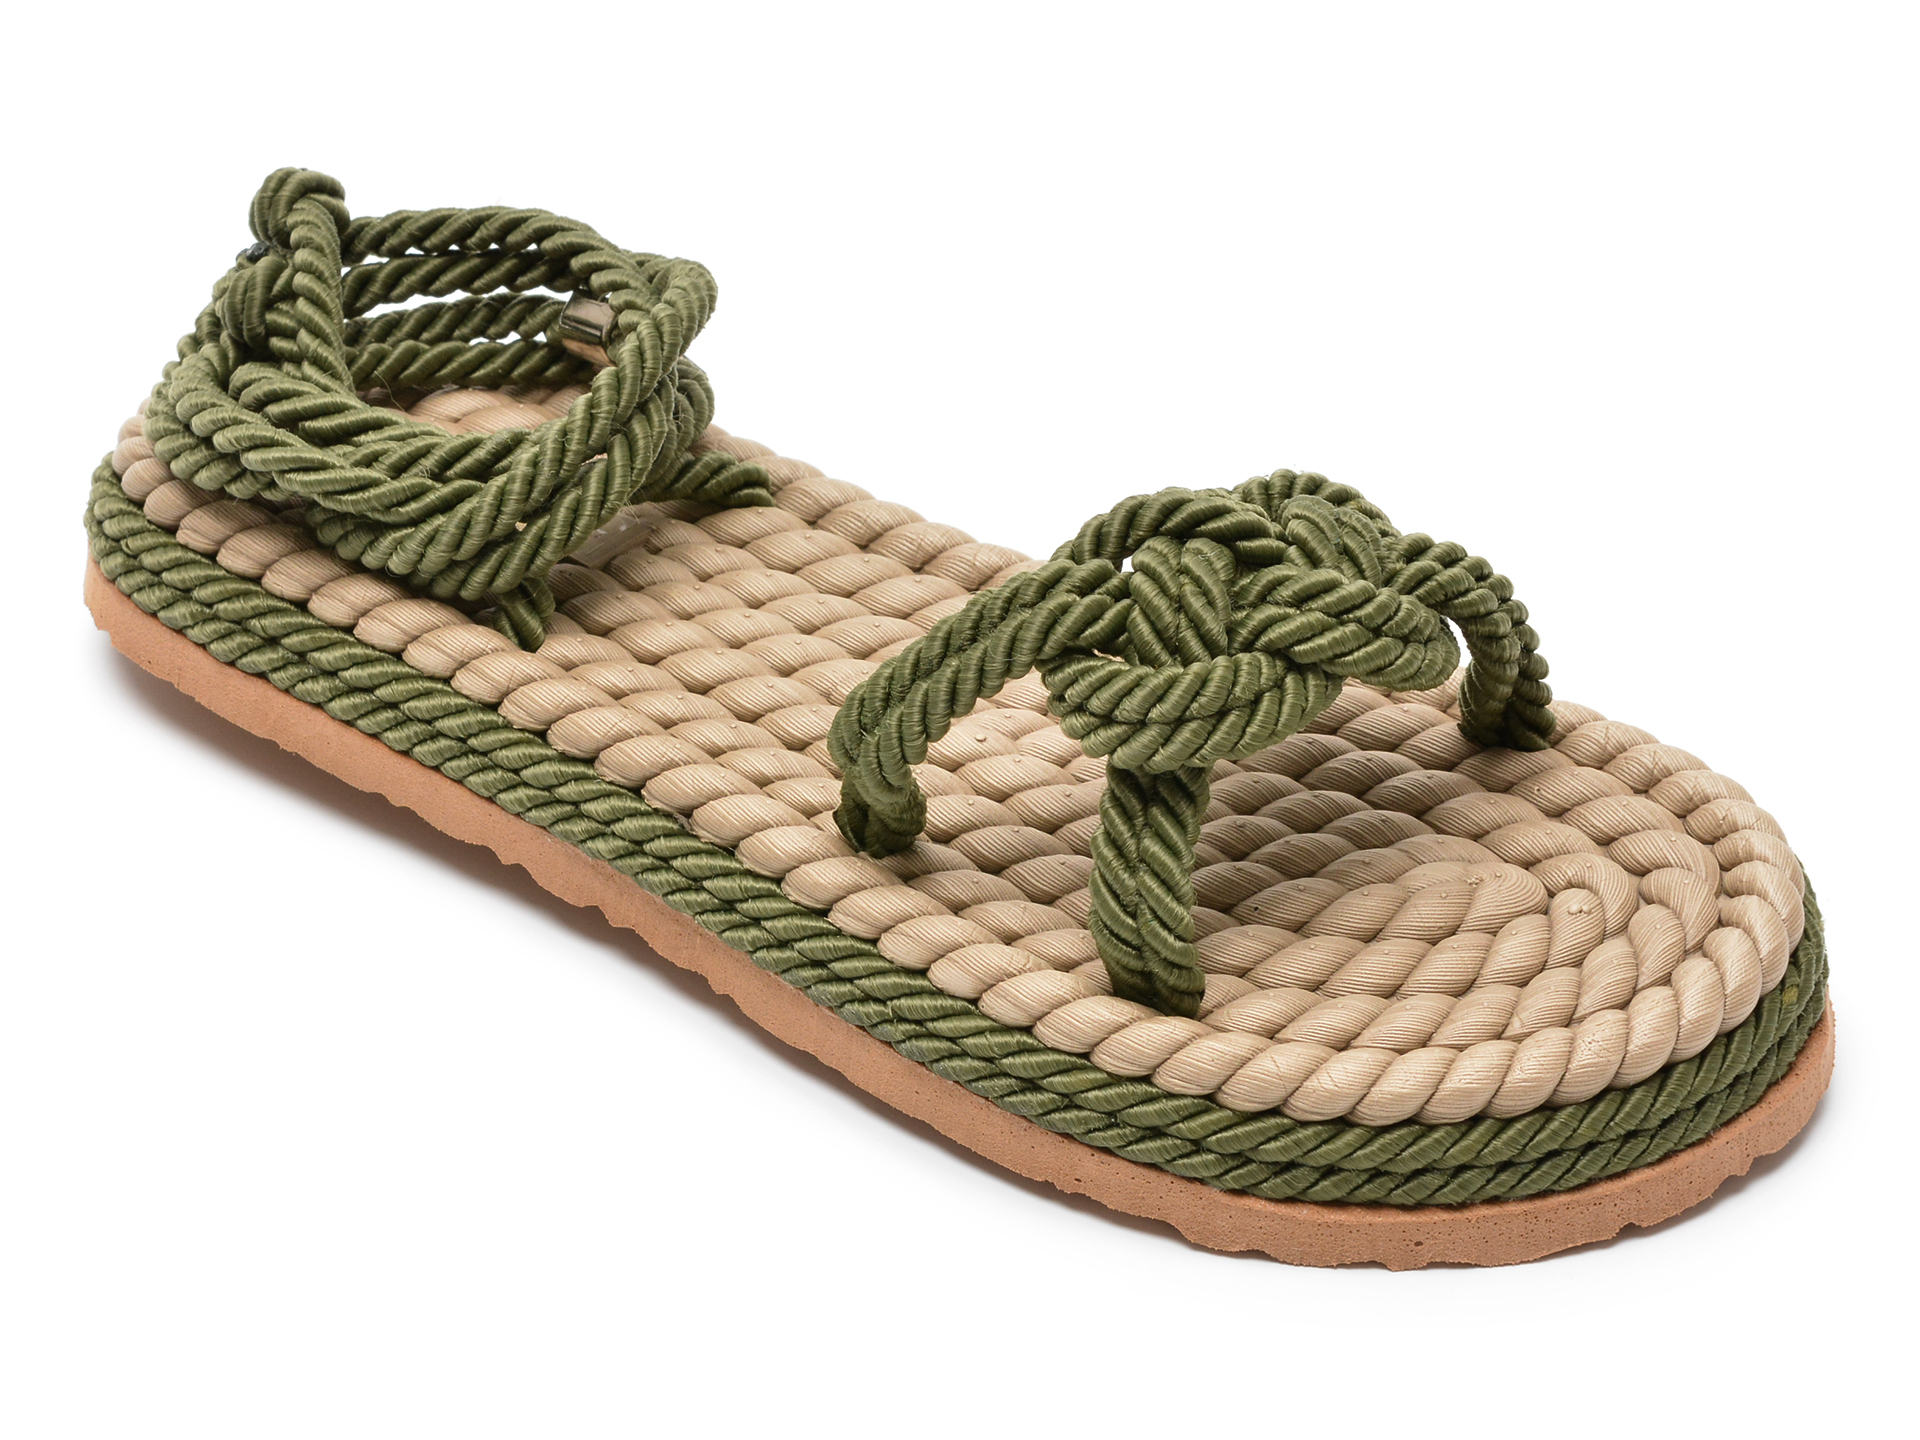 Sandale FLAVIA PASSINI kaki, 22102, din material textil Flavia Passini